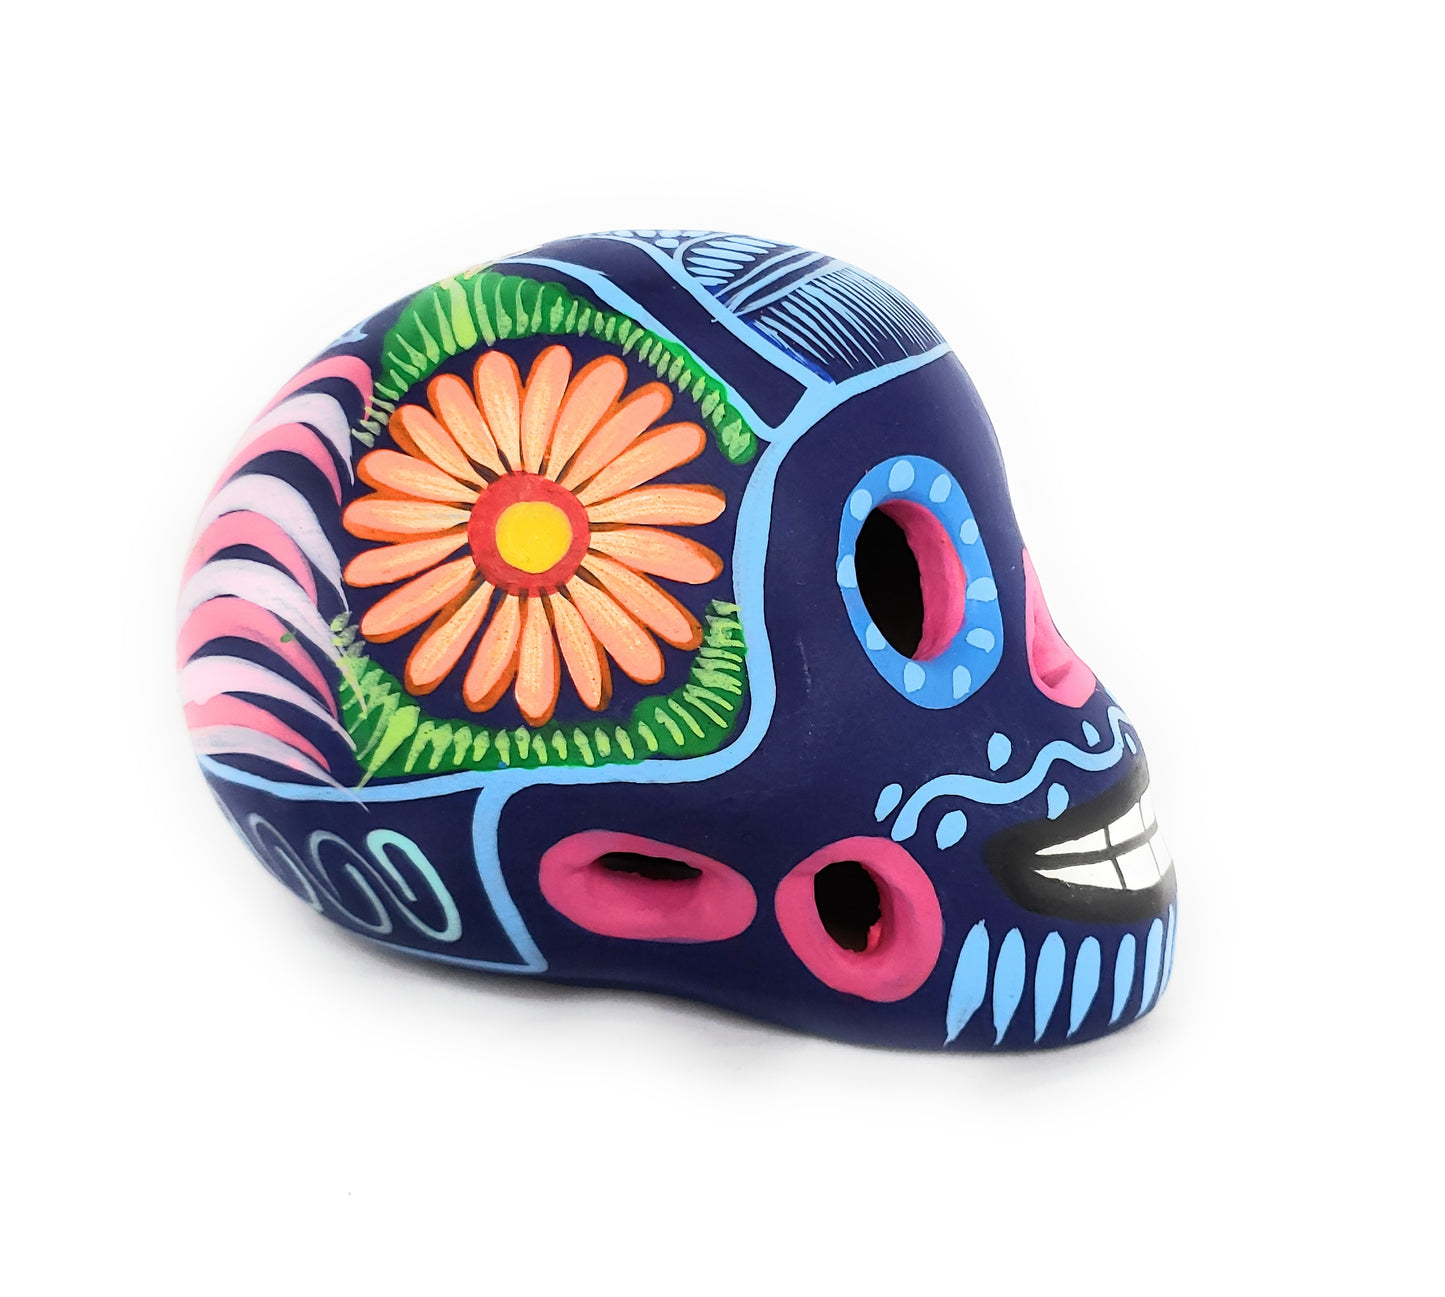 Mexican Dia de los Muertos Ceramic Skull